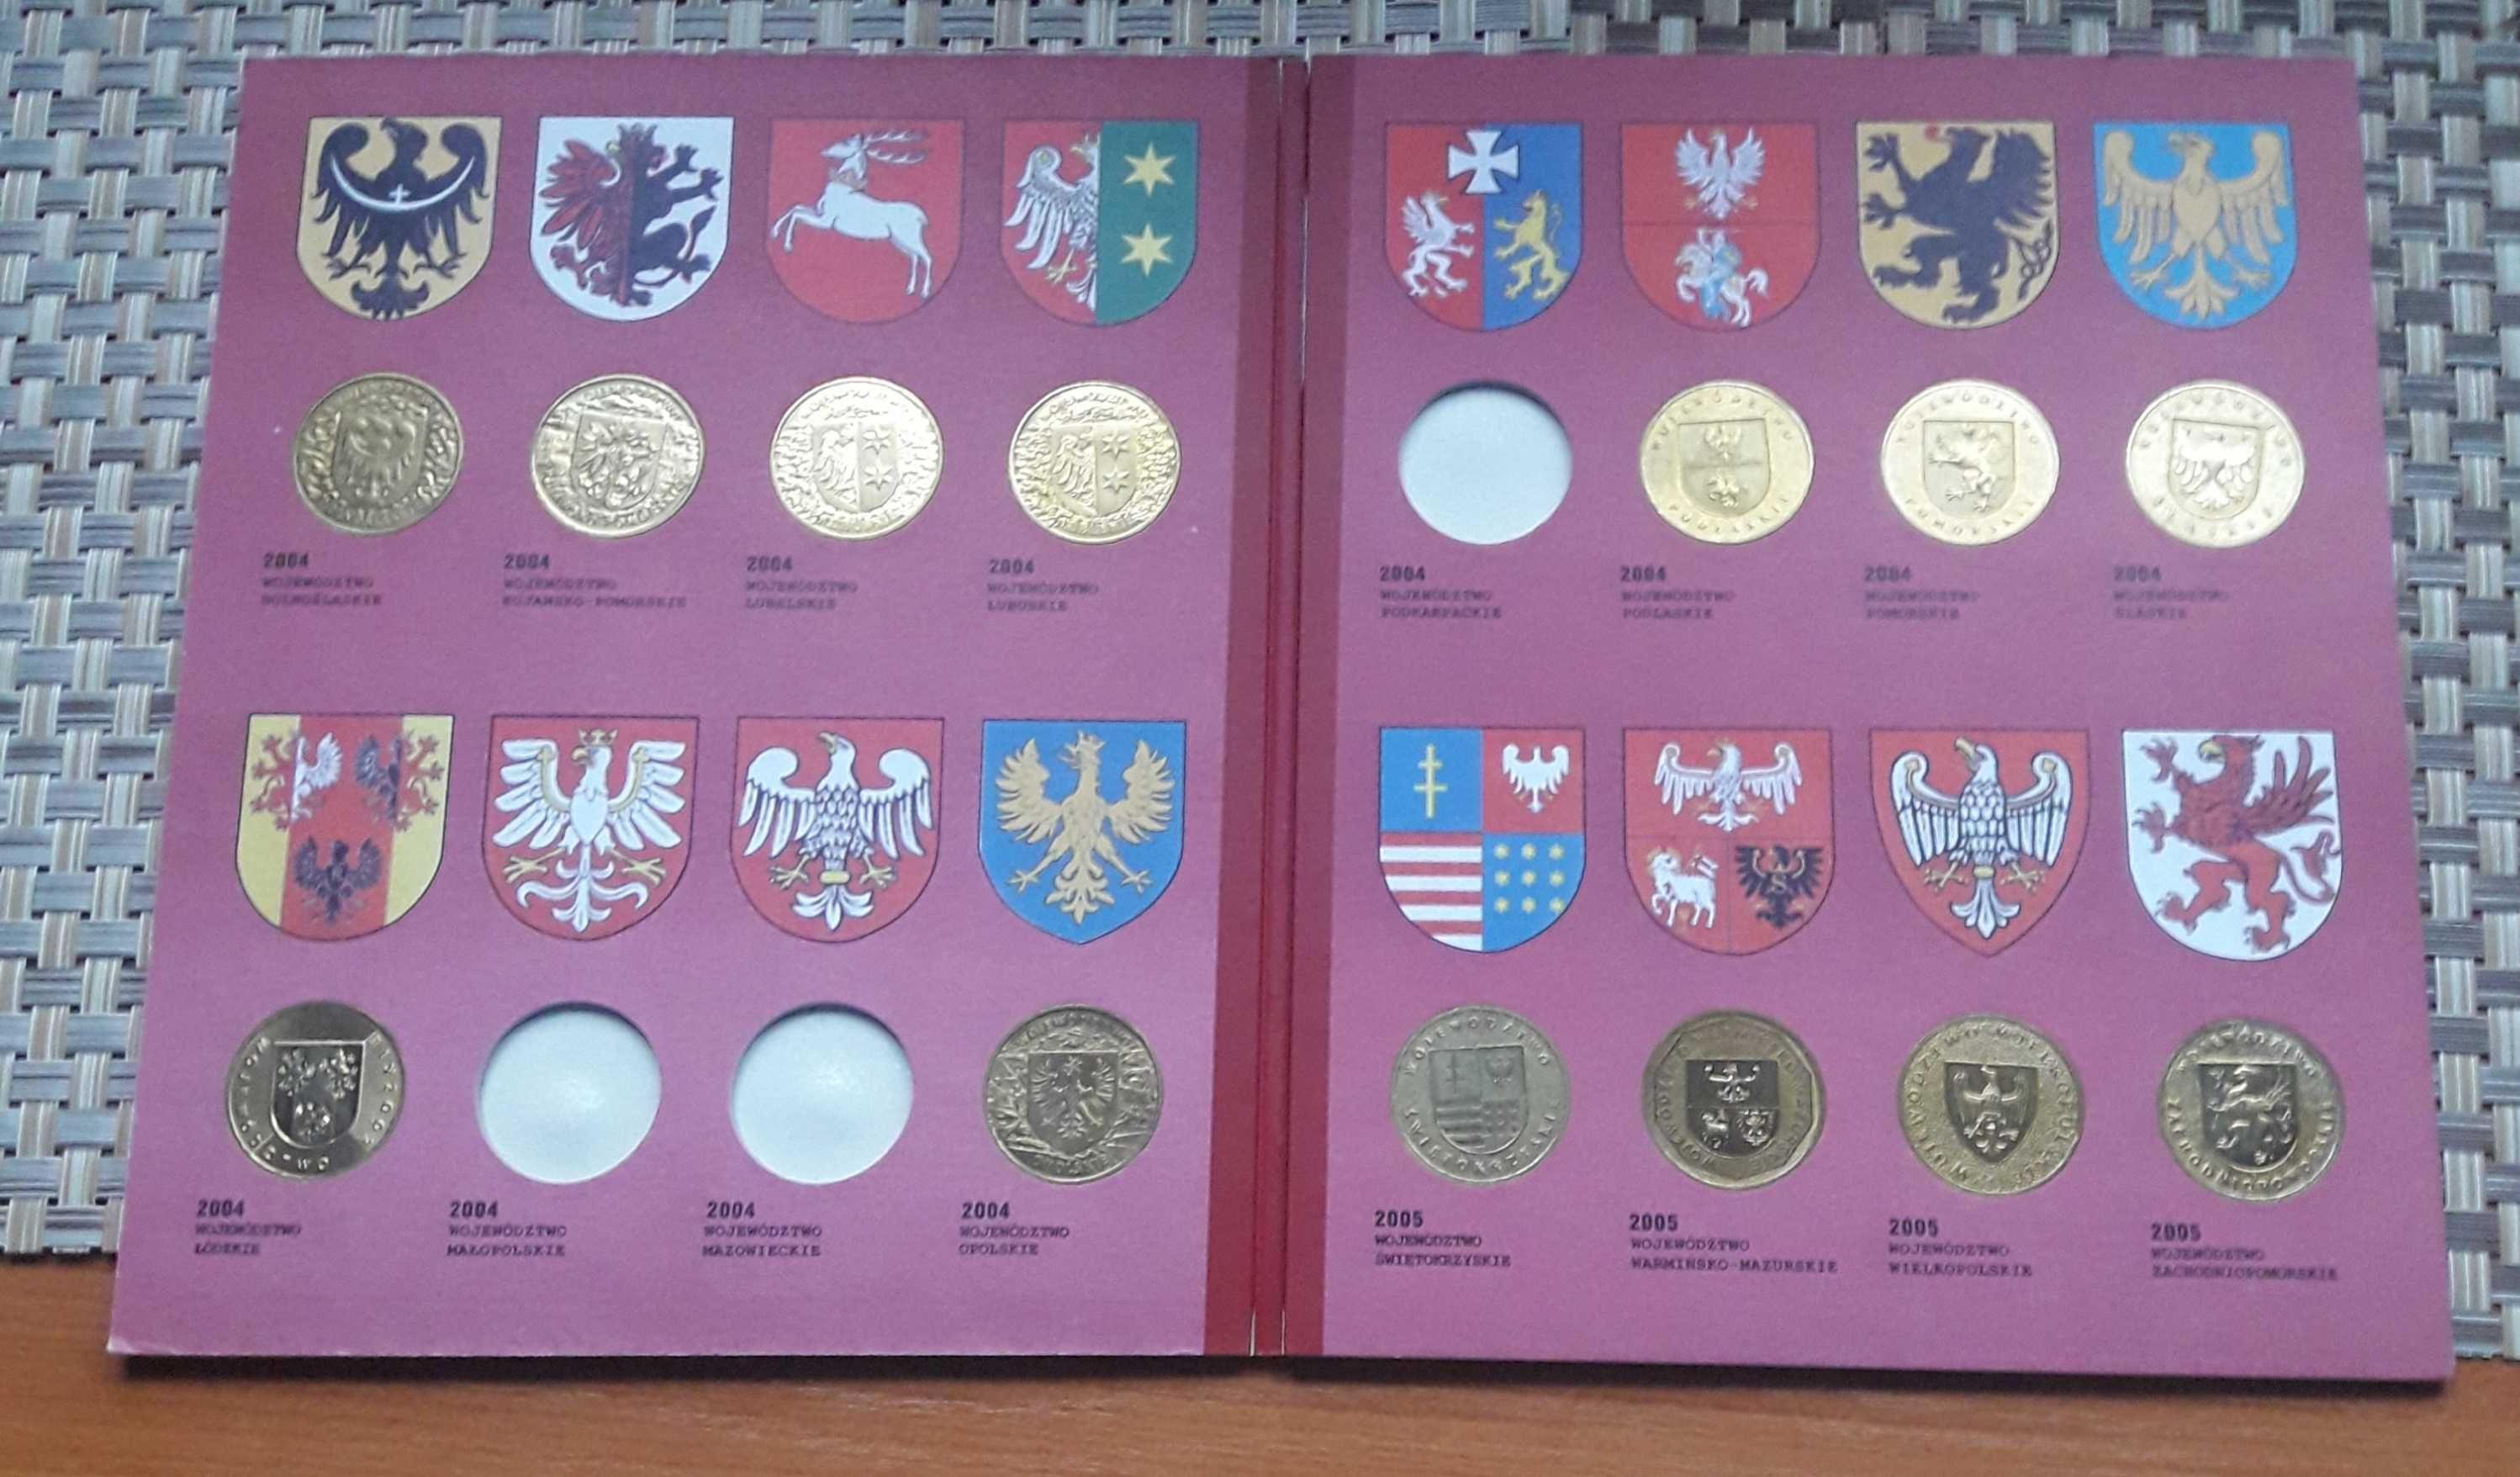 monety 2zł ng Polskie herby województw